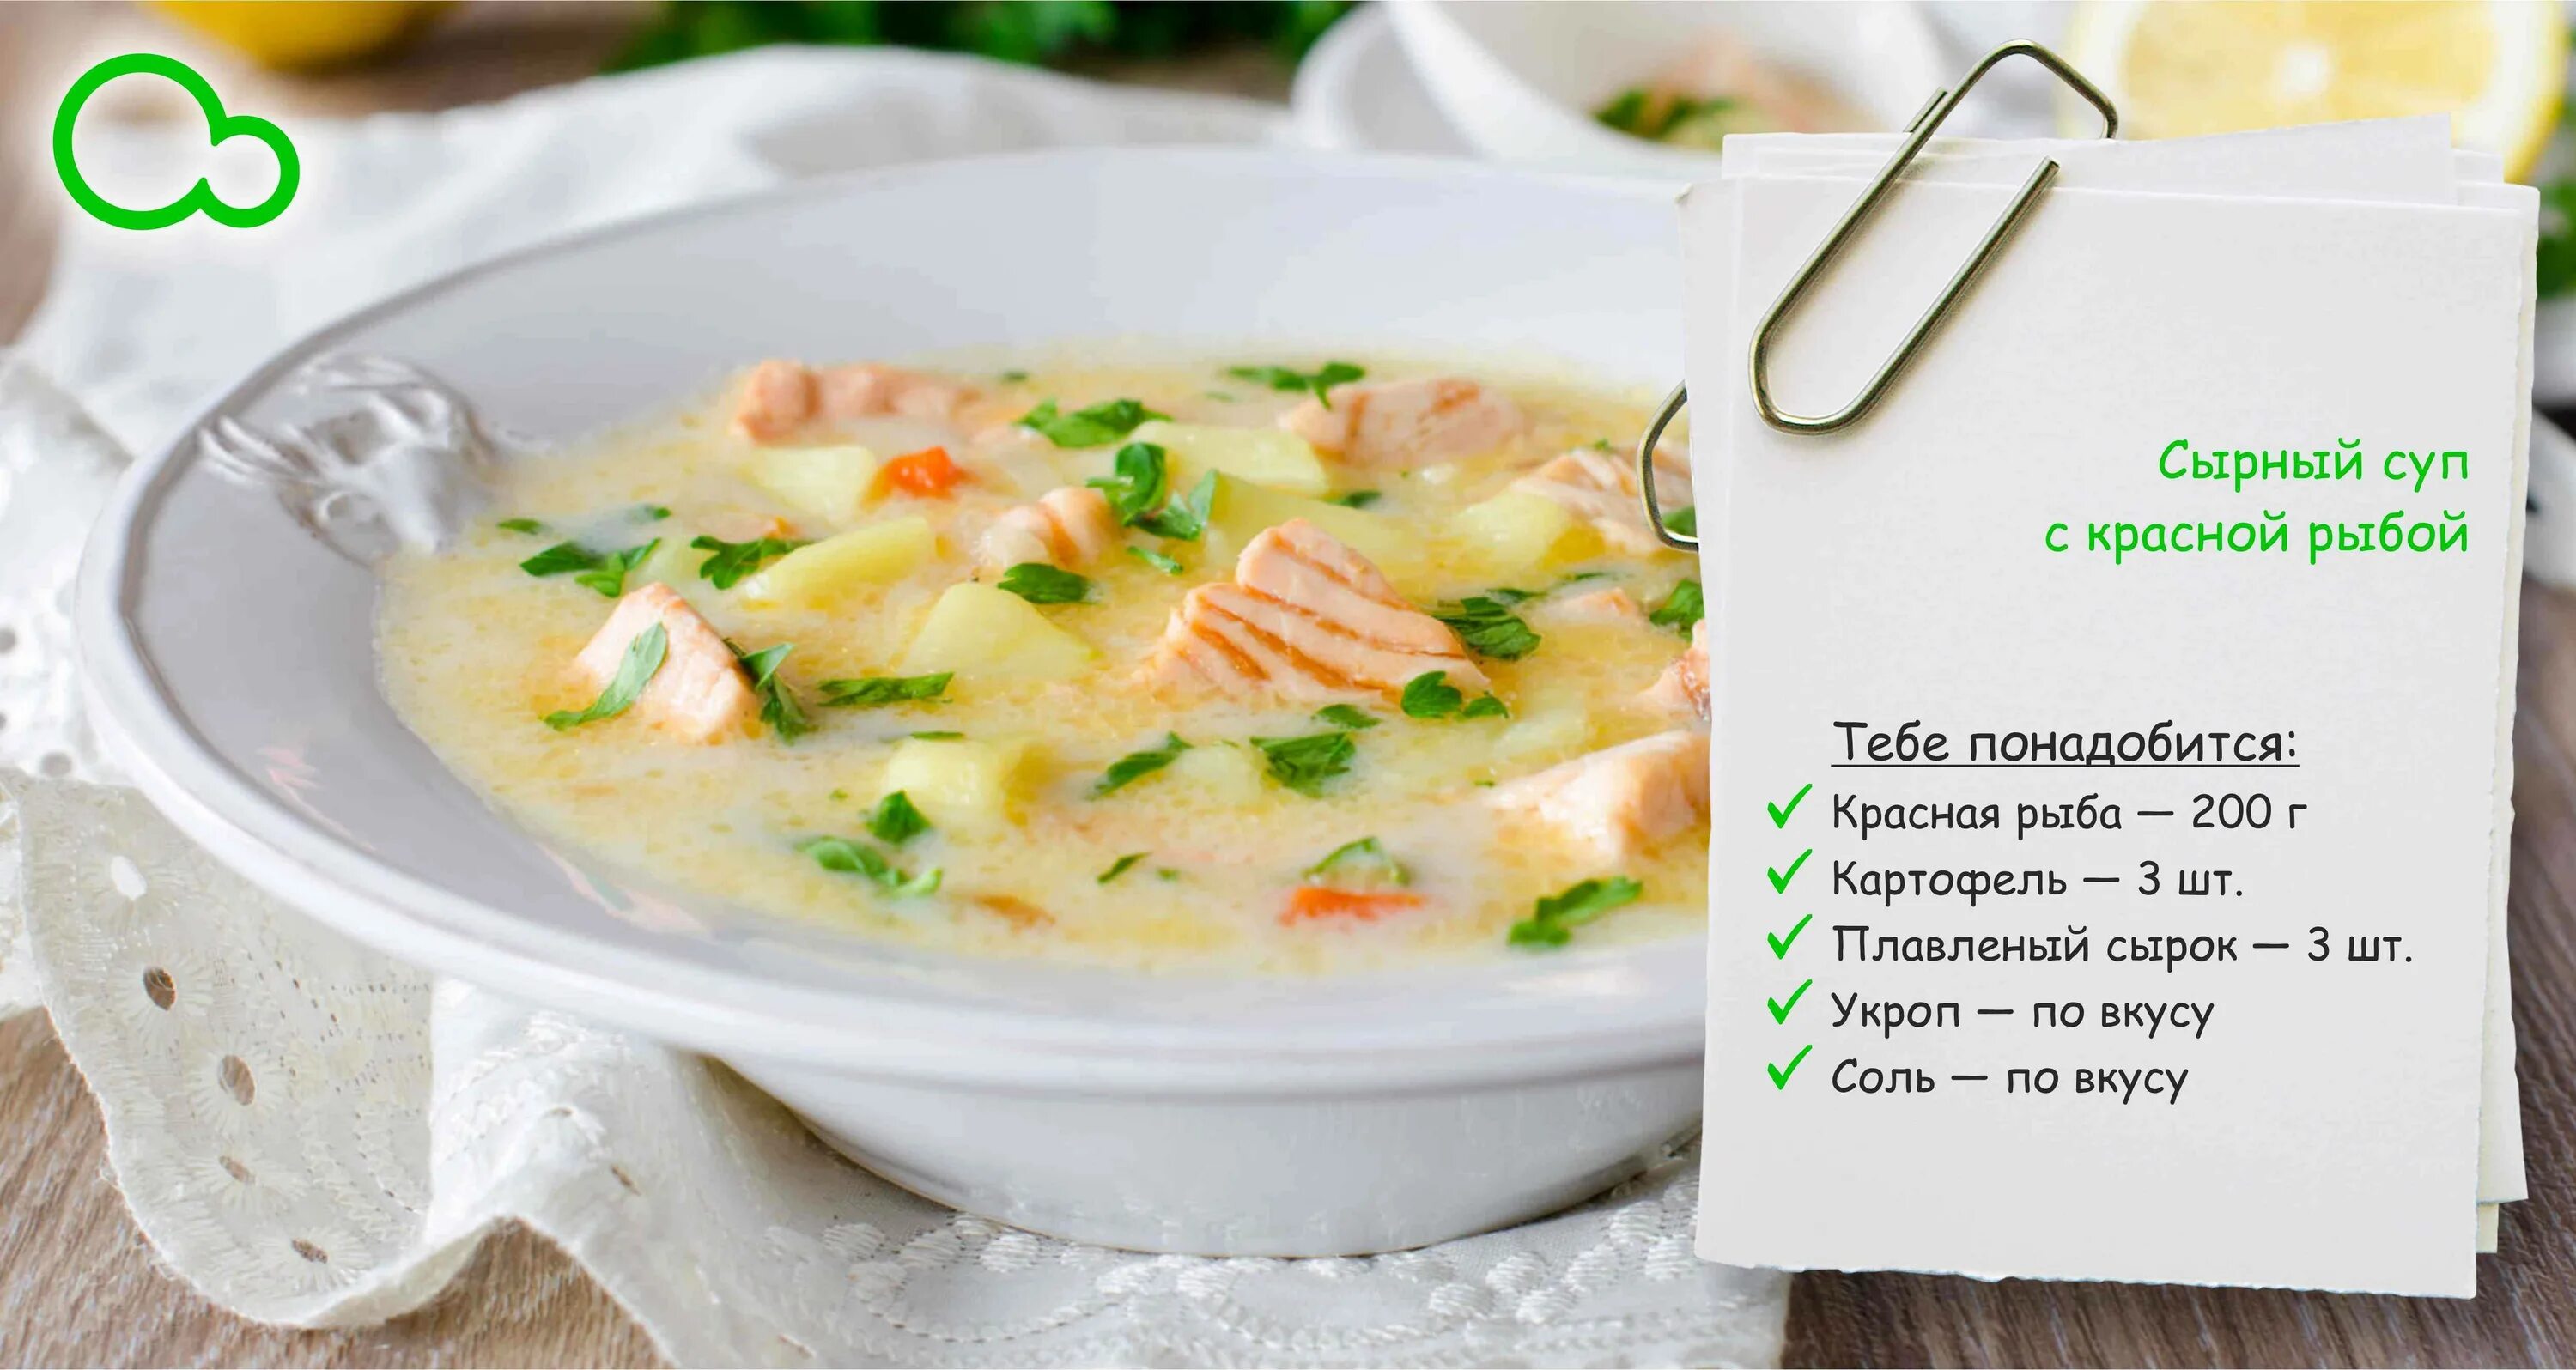 Калорийность супа из консервы. Рыбный суп с плавленным сыром. Суп из красной рыбы с плавленным сыром. Сырный суп с красной рыбой и плавленным сыром. Суп с рыбой и плавленным сыром.